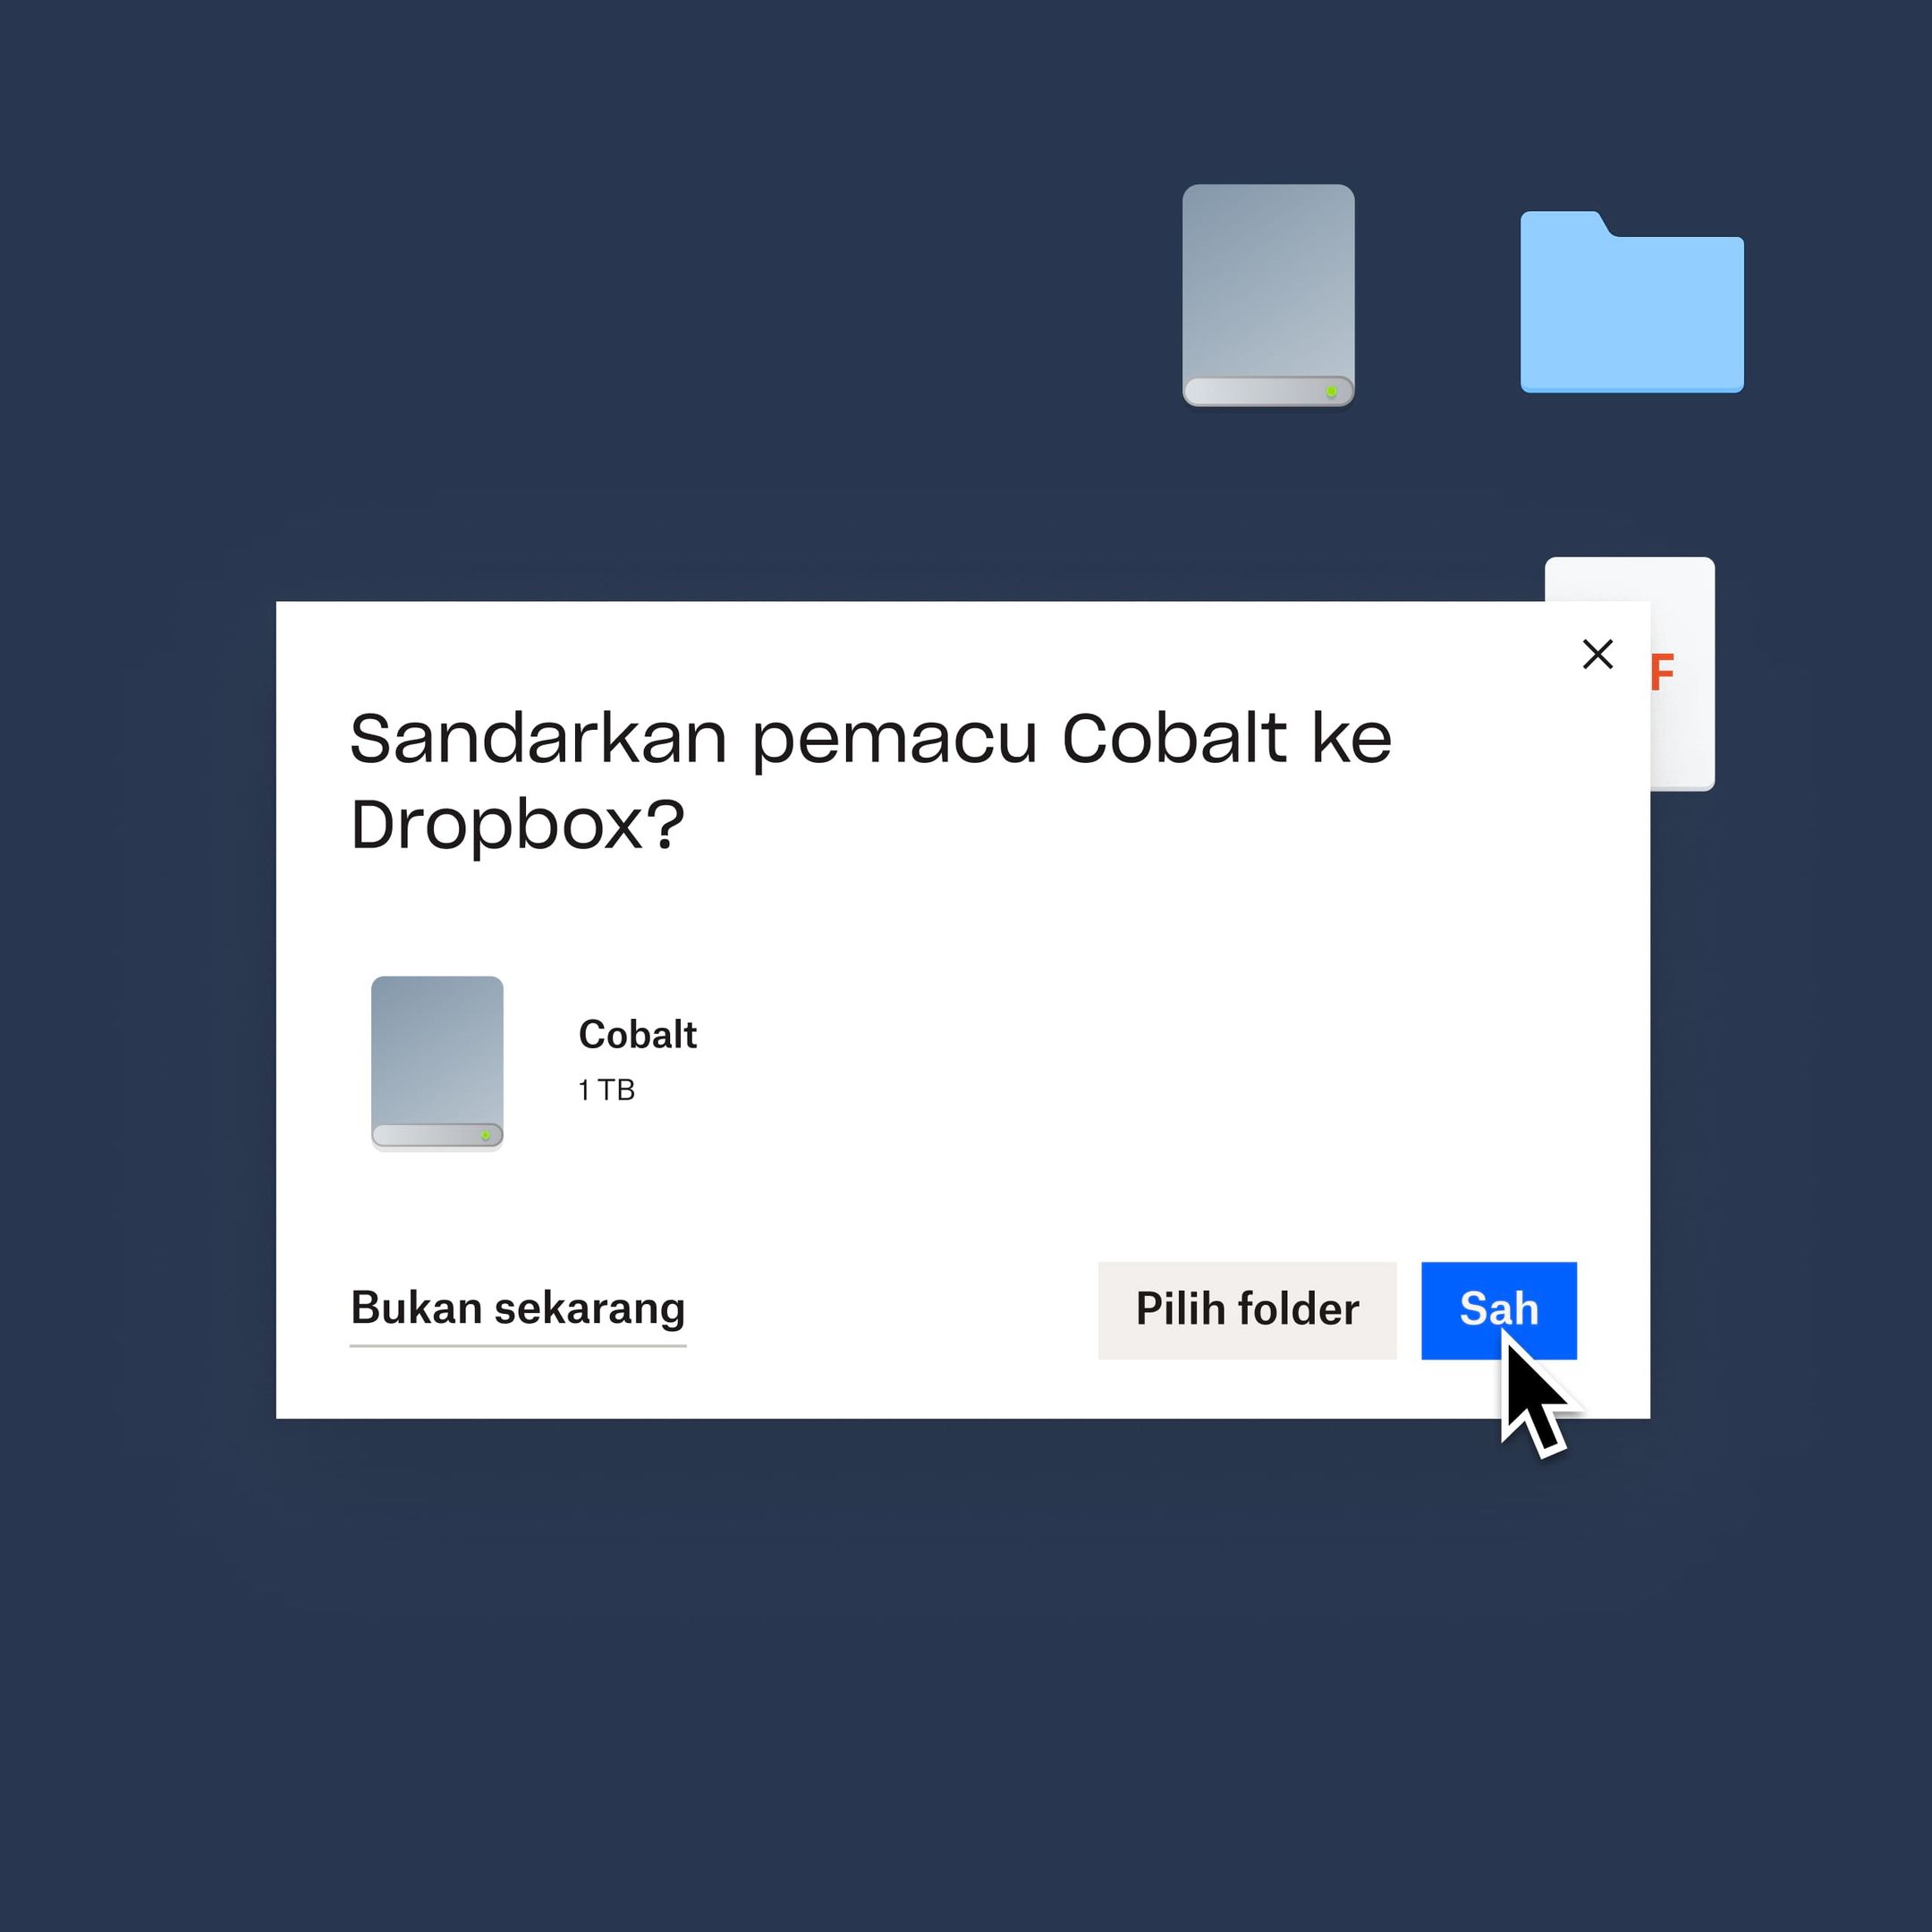 Seorang pengguna mengklik pada butang “sahkan” berwarna biru untuk menyandarkan pemacu Kobalt mereka kepada Dropbox